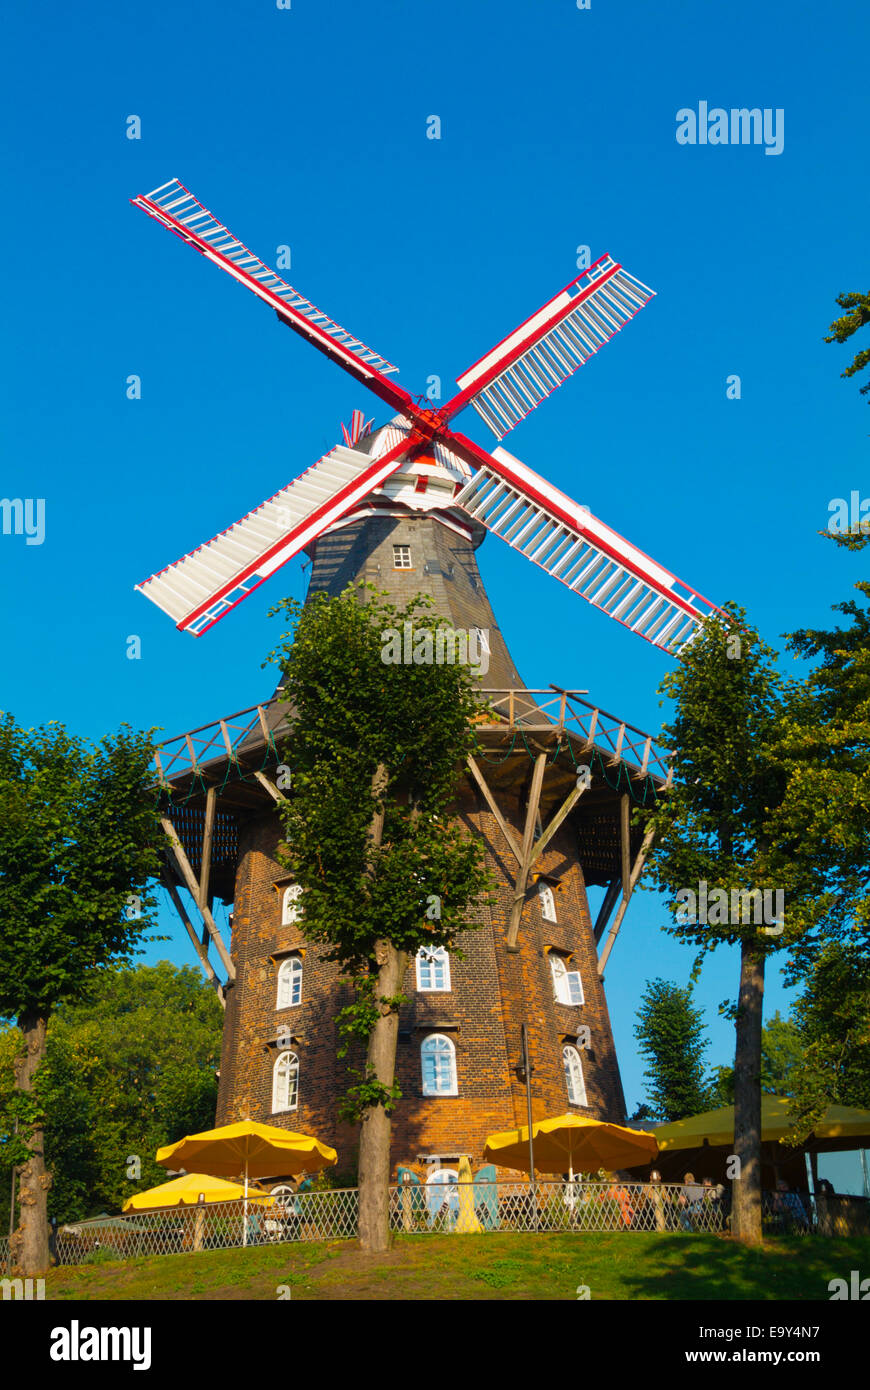 Windmühle am Wall, le moulin à vent avec café, parc Wallanlagen, le centre de Brême, Allemagne Banque D'Images